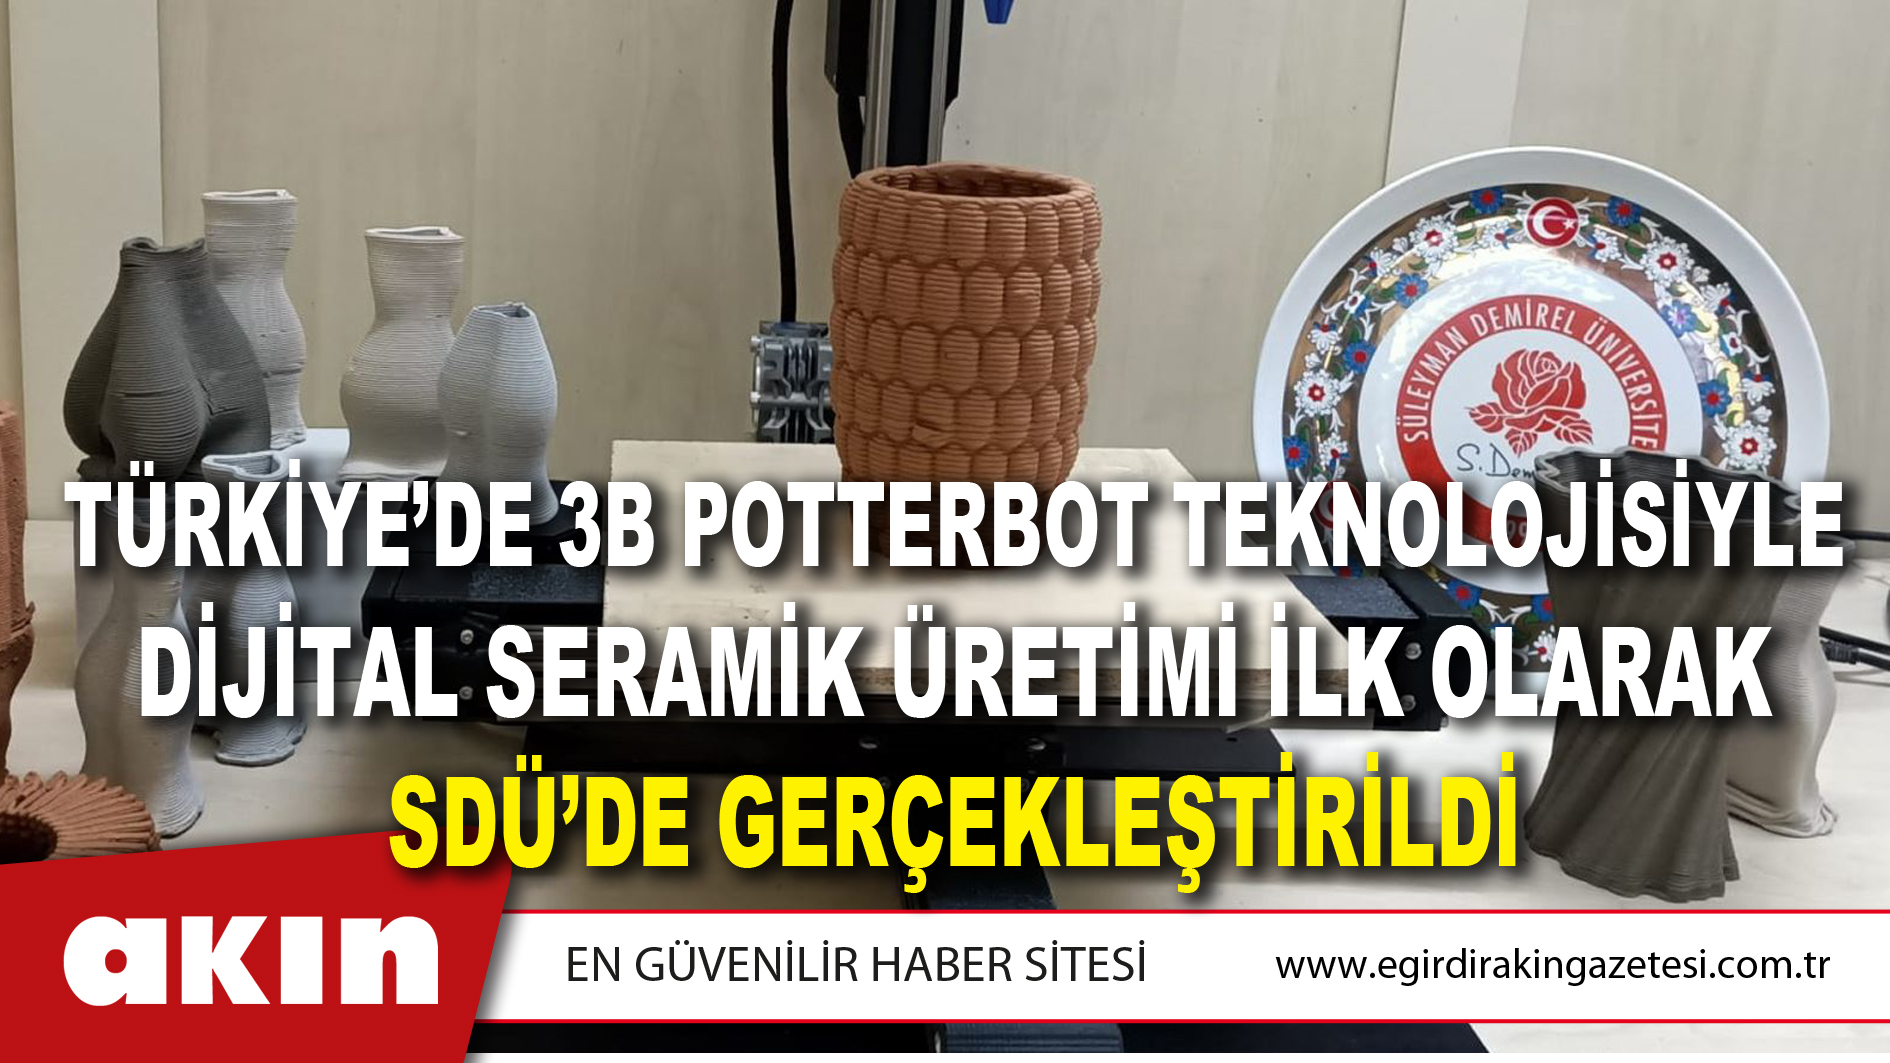 eğirdir haber,akın gazetesi,egirdir haberler,son dakika,Türkiye’de 3b Potterbot Teknolojisiyle Dijital Seramik Üretimi İlk Olarak SDÜ’de Gerçekleştirildi